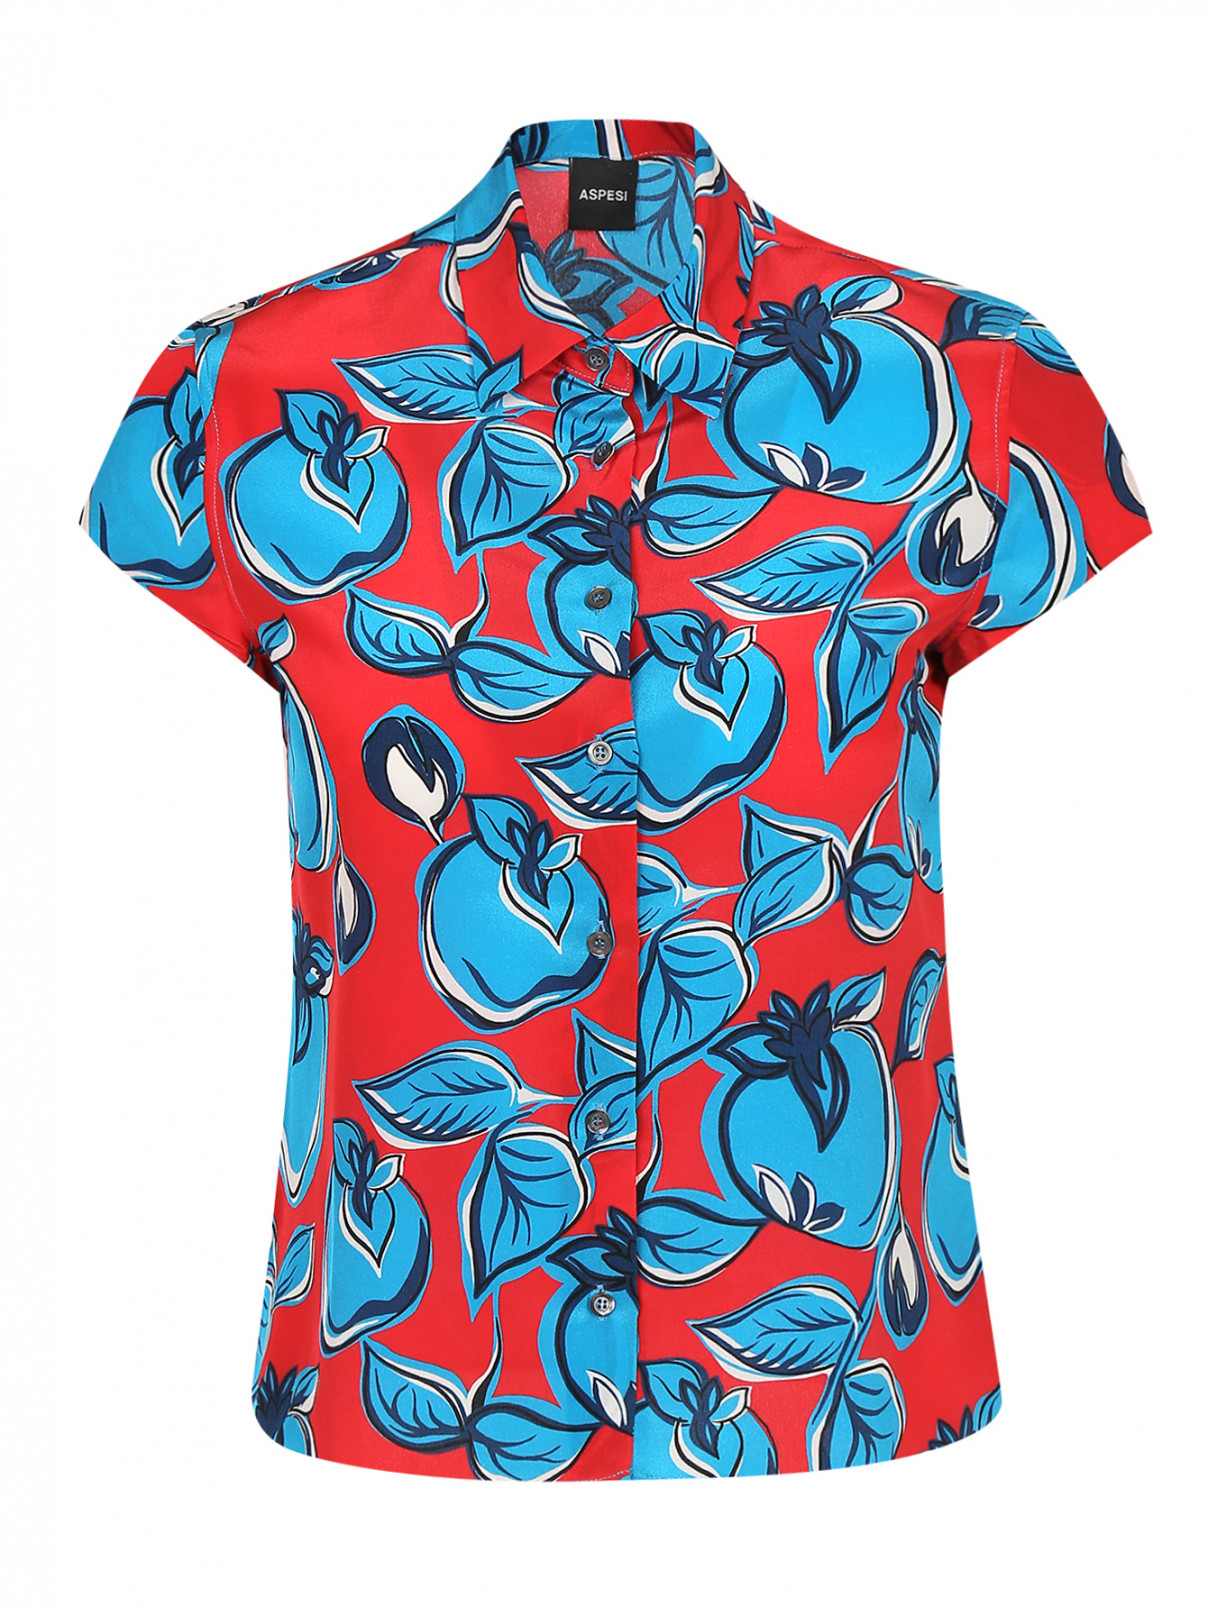 Блуза из шелка с принтом Aspesi  –  Общий вид  – Цвет:  Узор